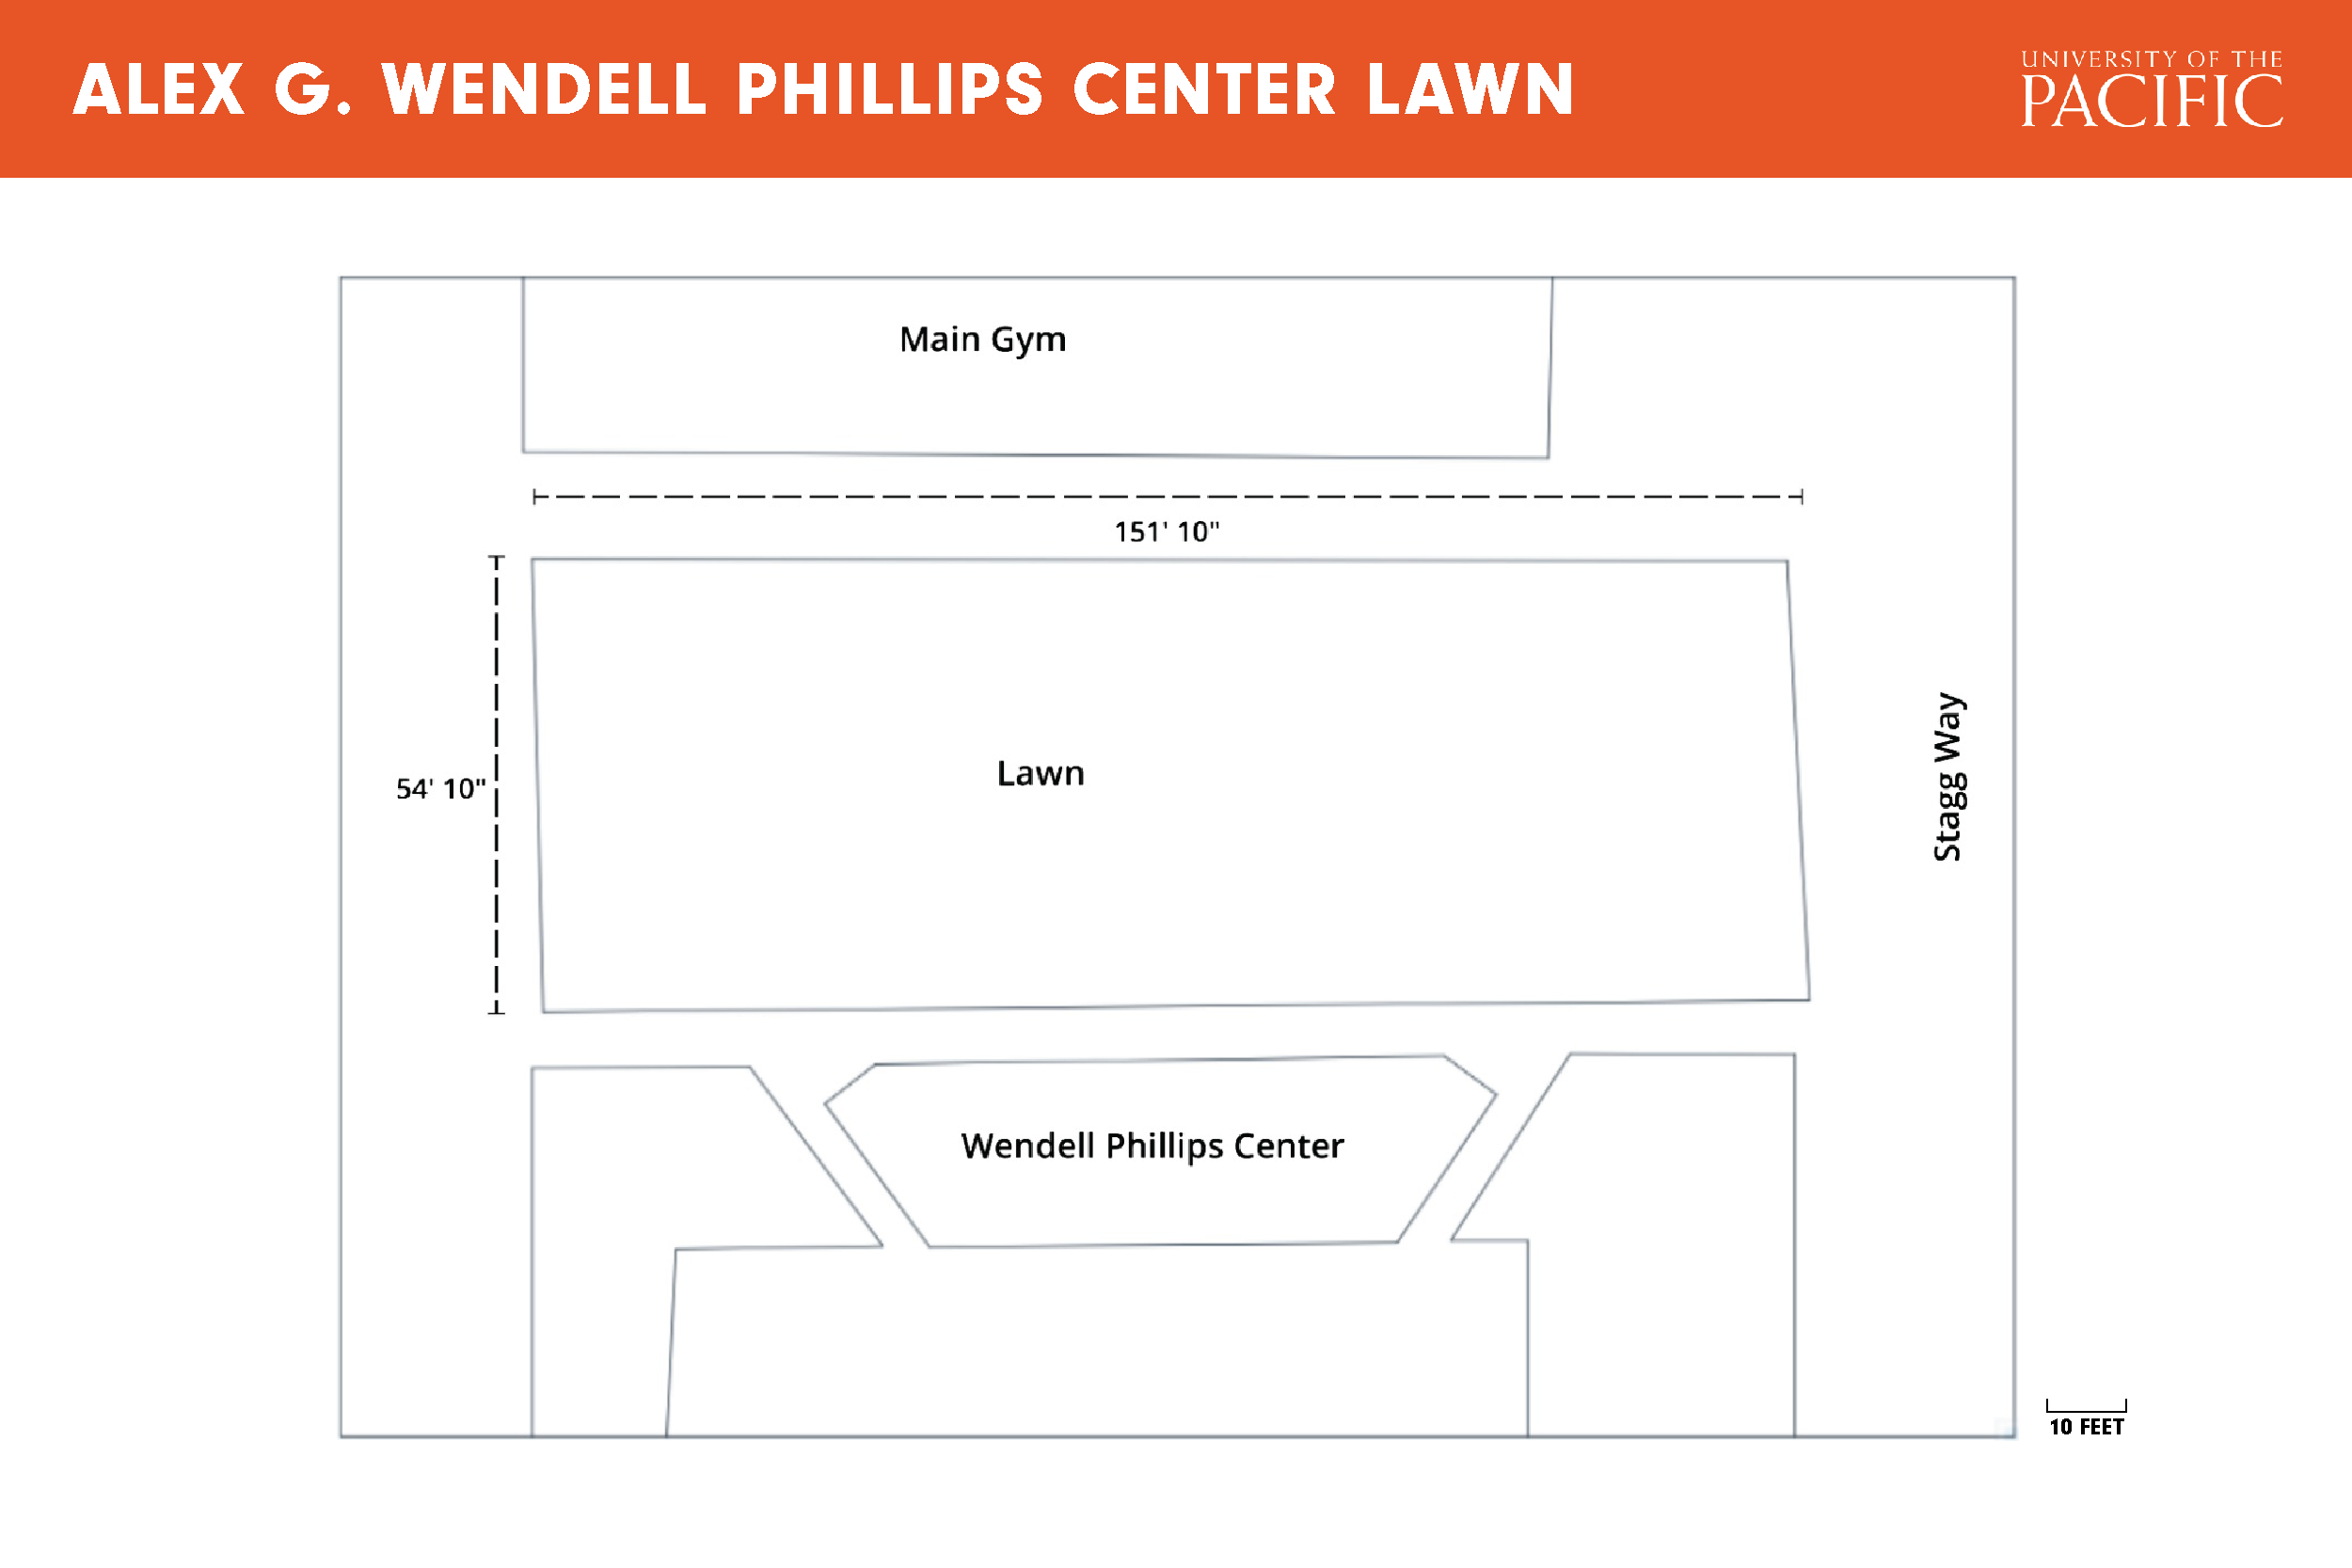 Alex G. Wendell Phillips Center Lawn plan